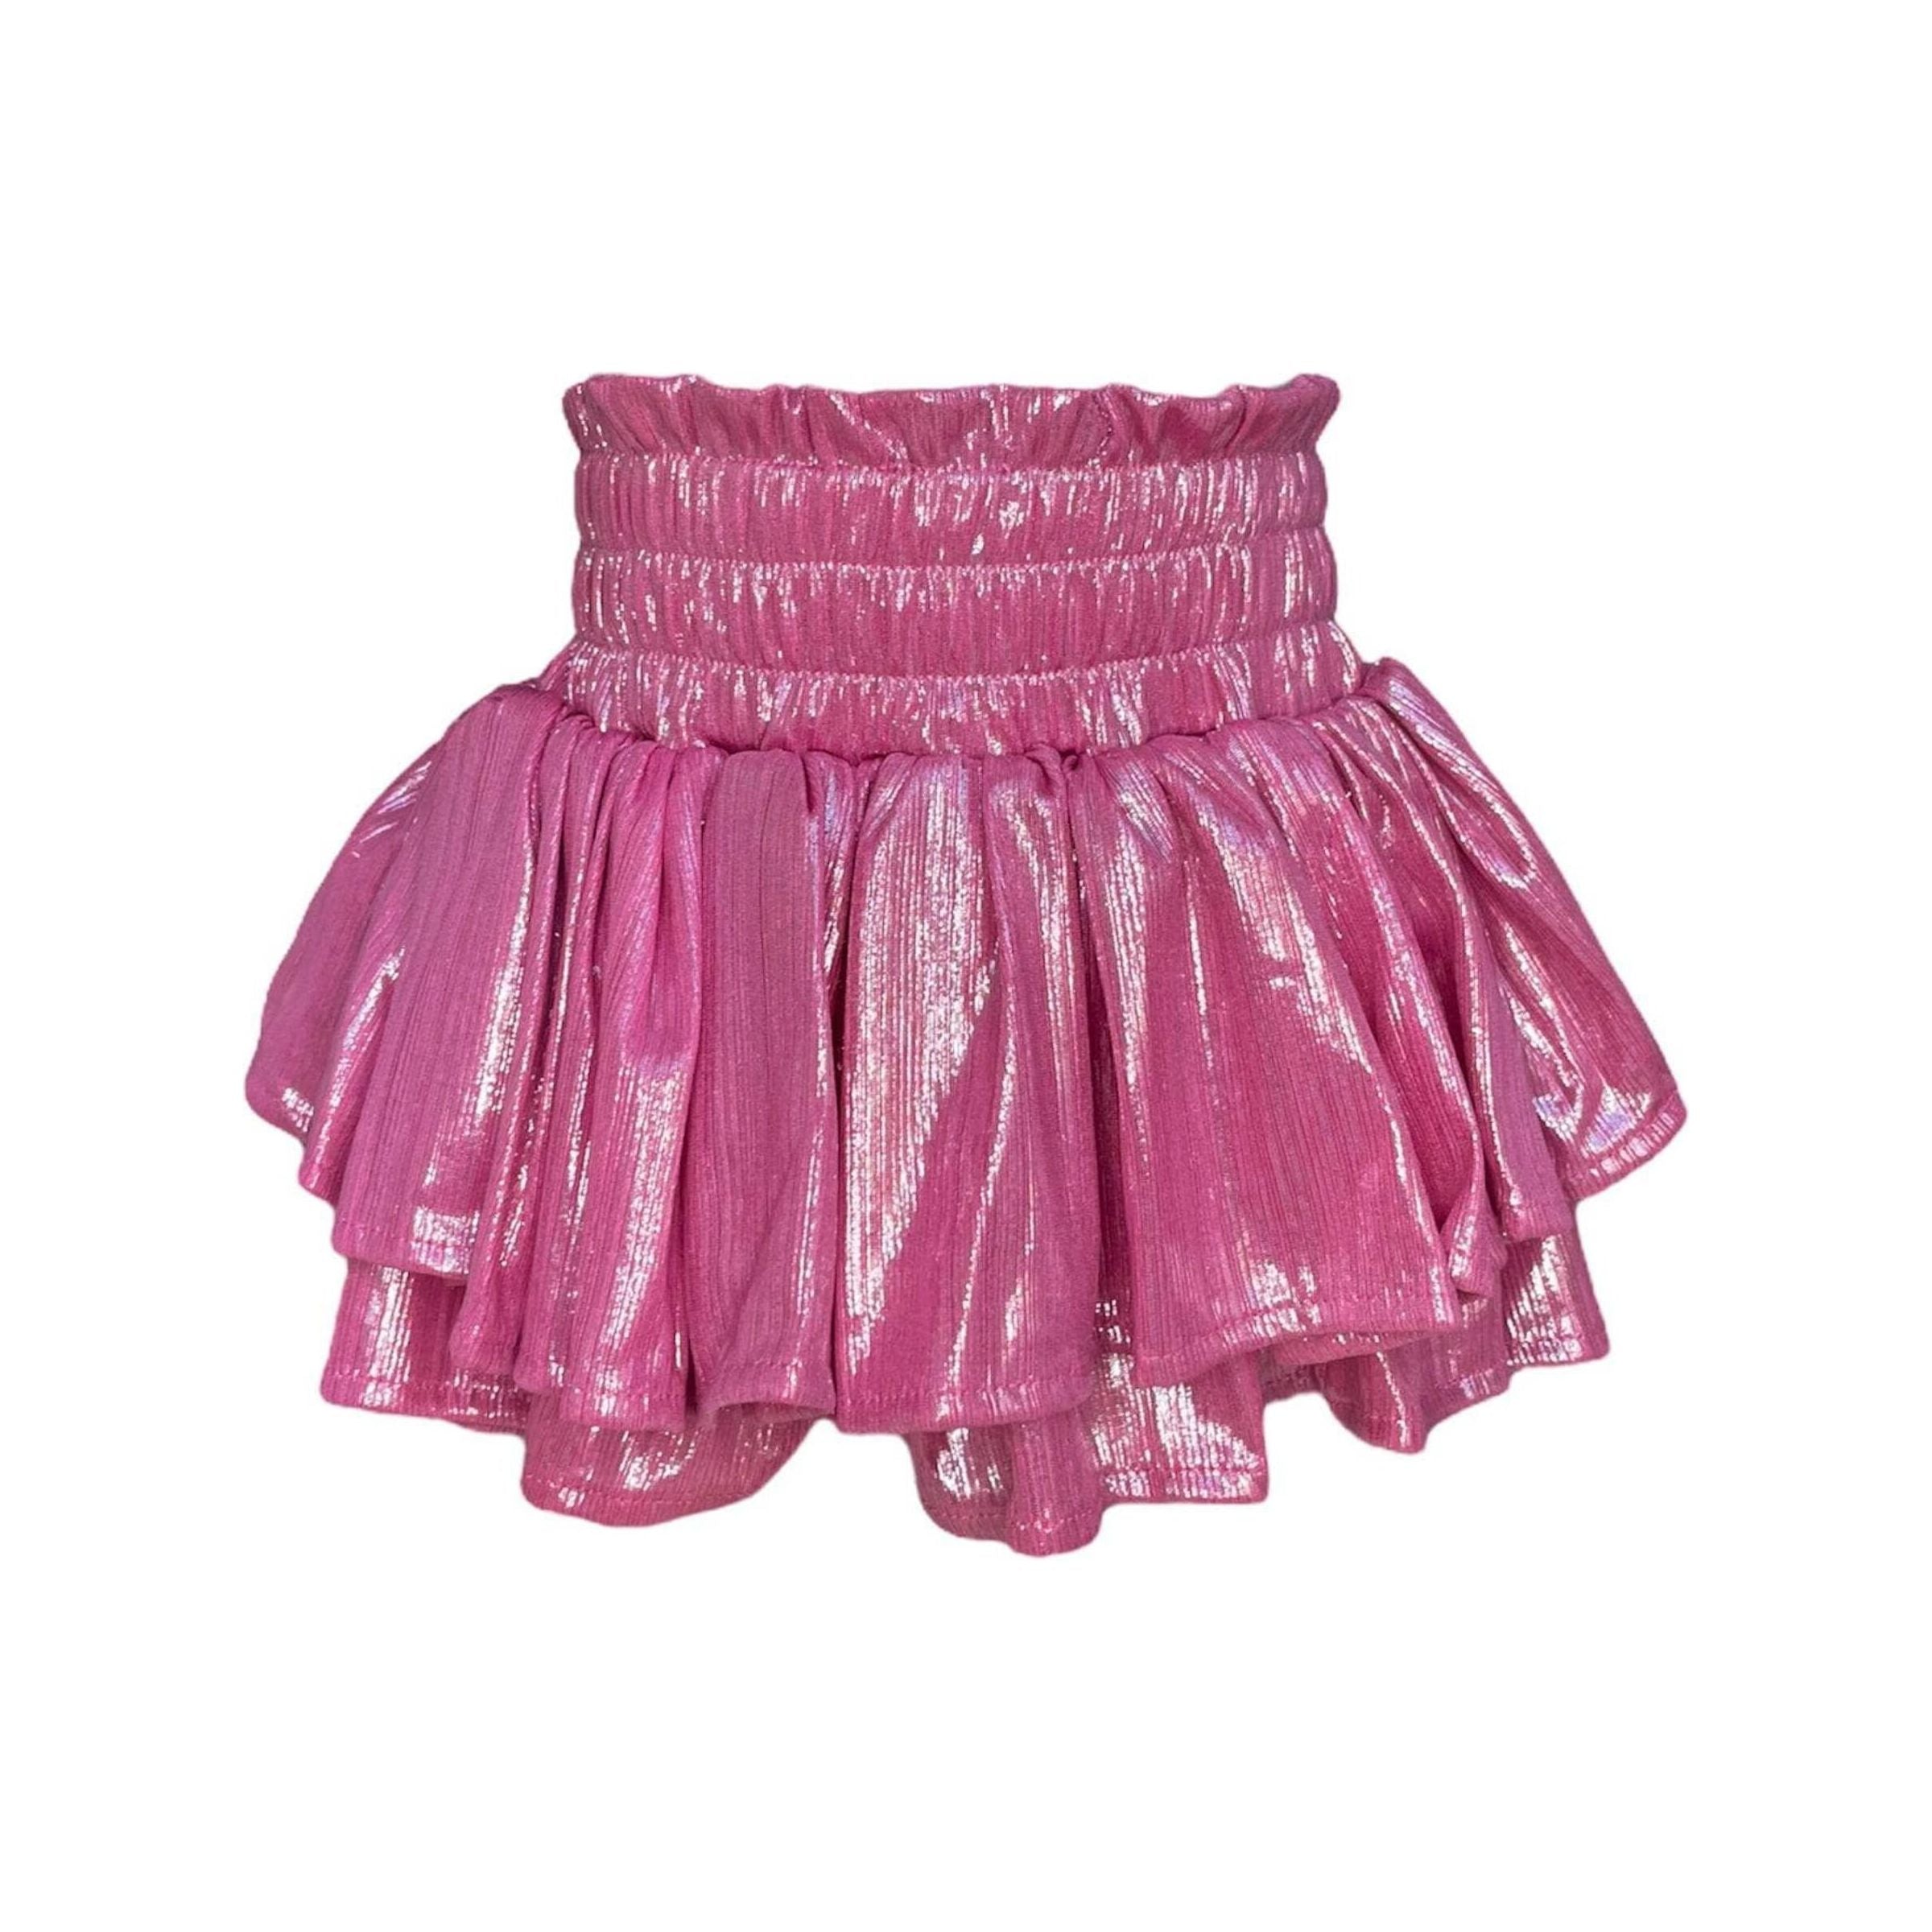 Metallic Skirt - Pink